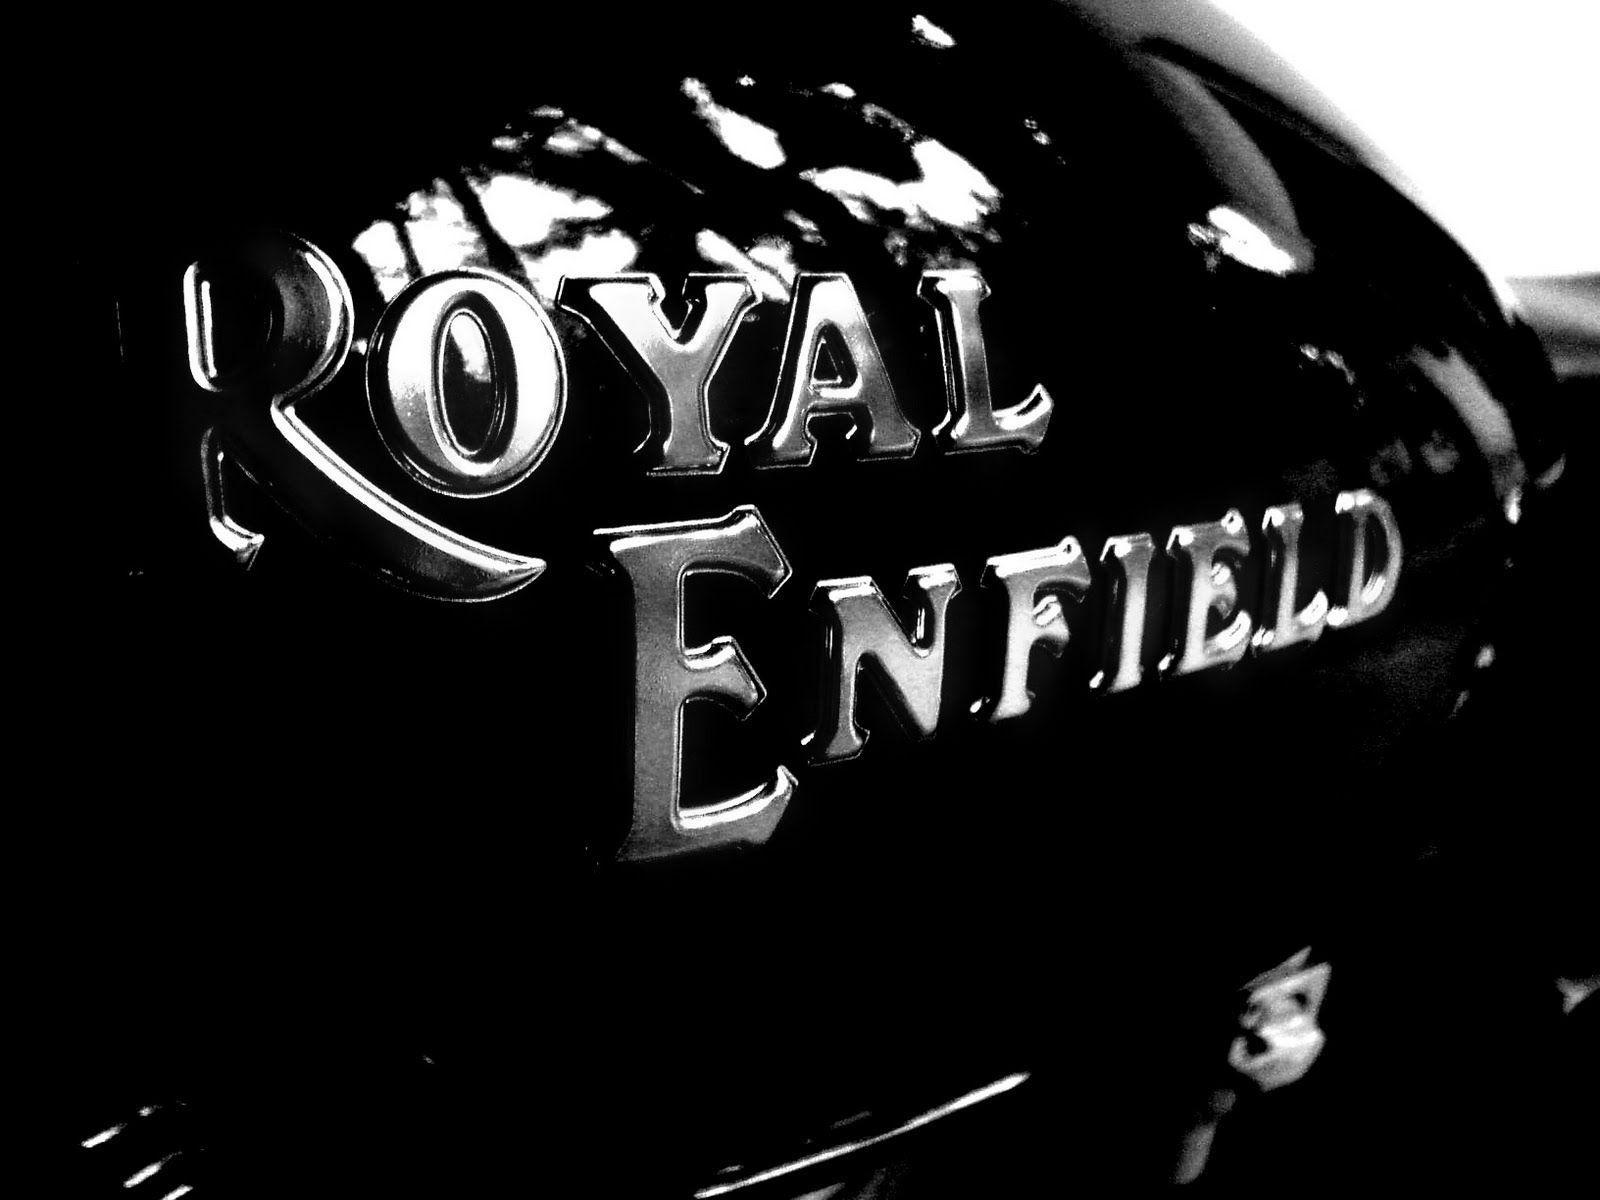 Royal Enfield HD wallpaper widescreen wallpaper. High